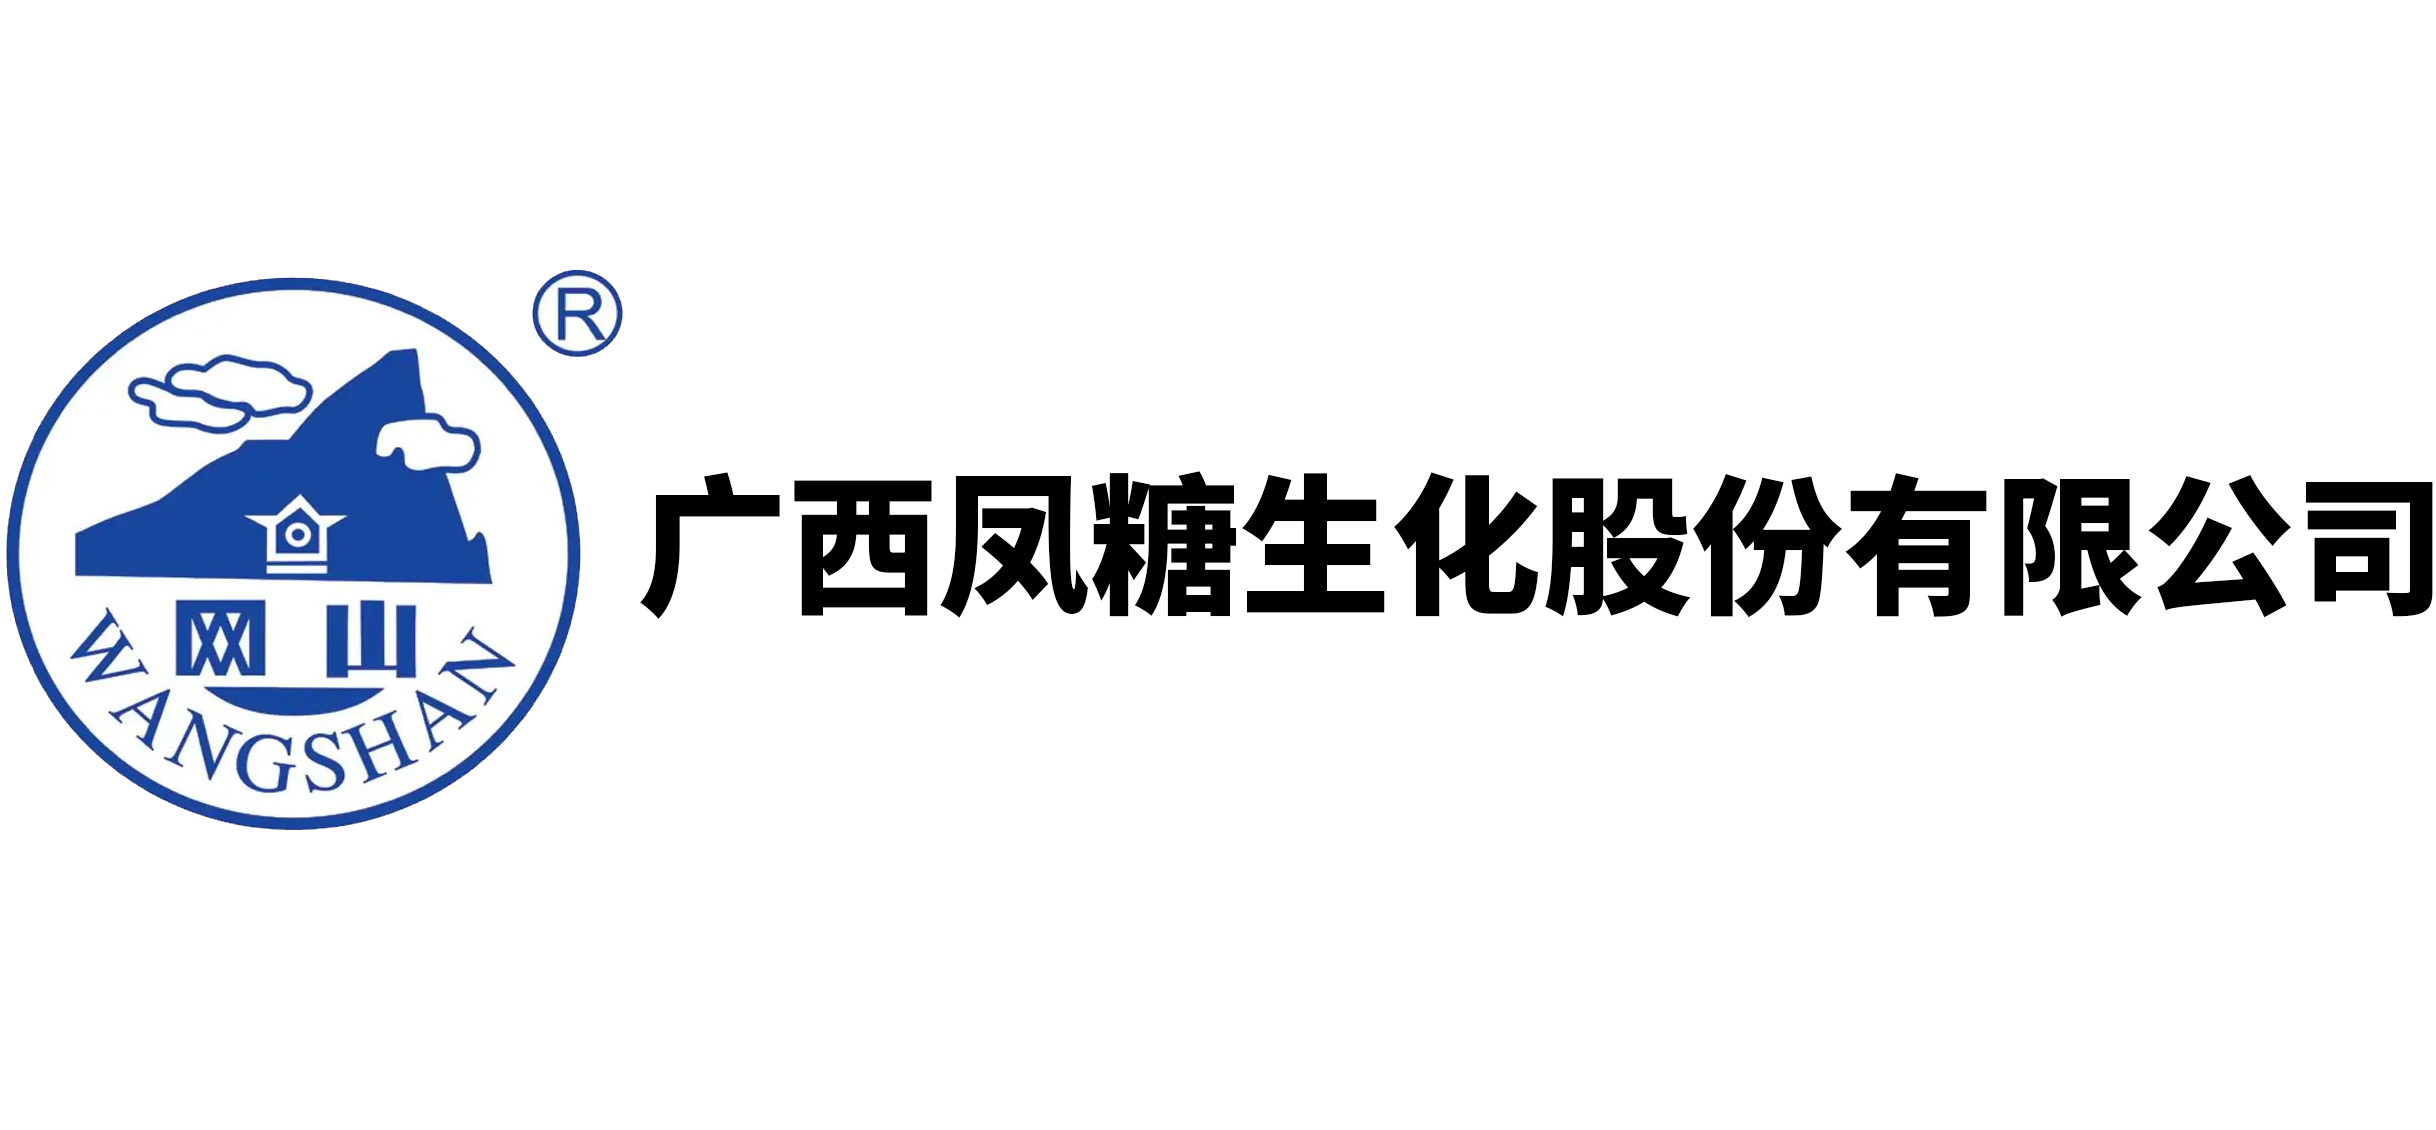 广西凤糖生化股份有限公司